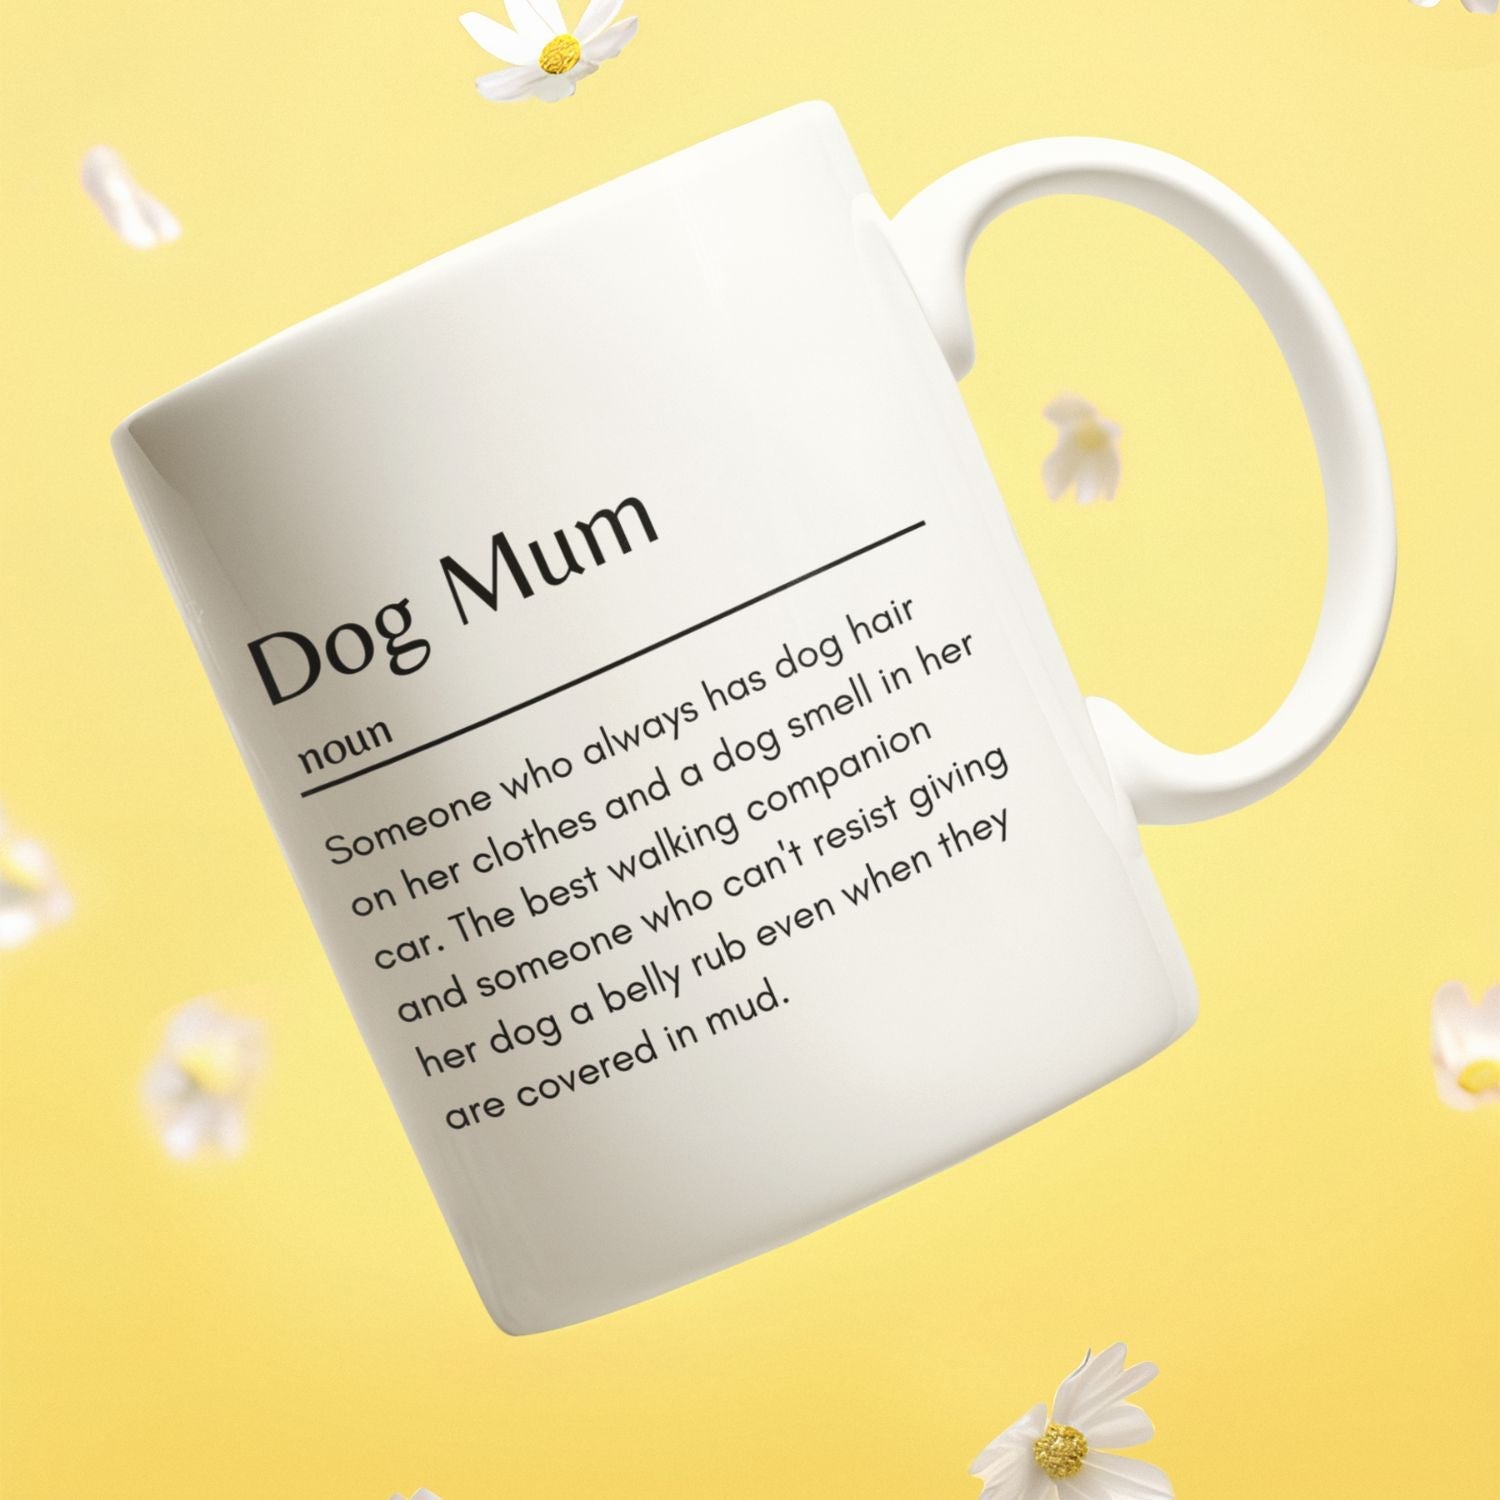 Dog Mum Definition Mug, Best Funny Mug Gift - Sweetie